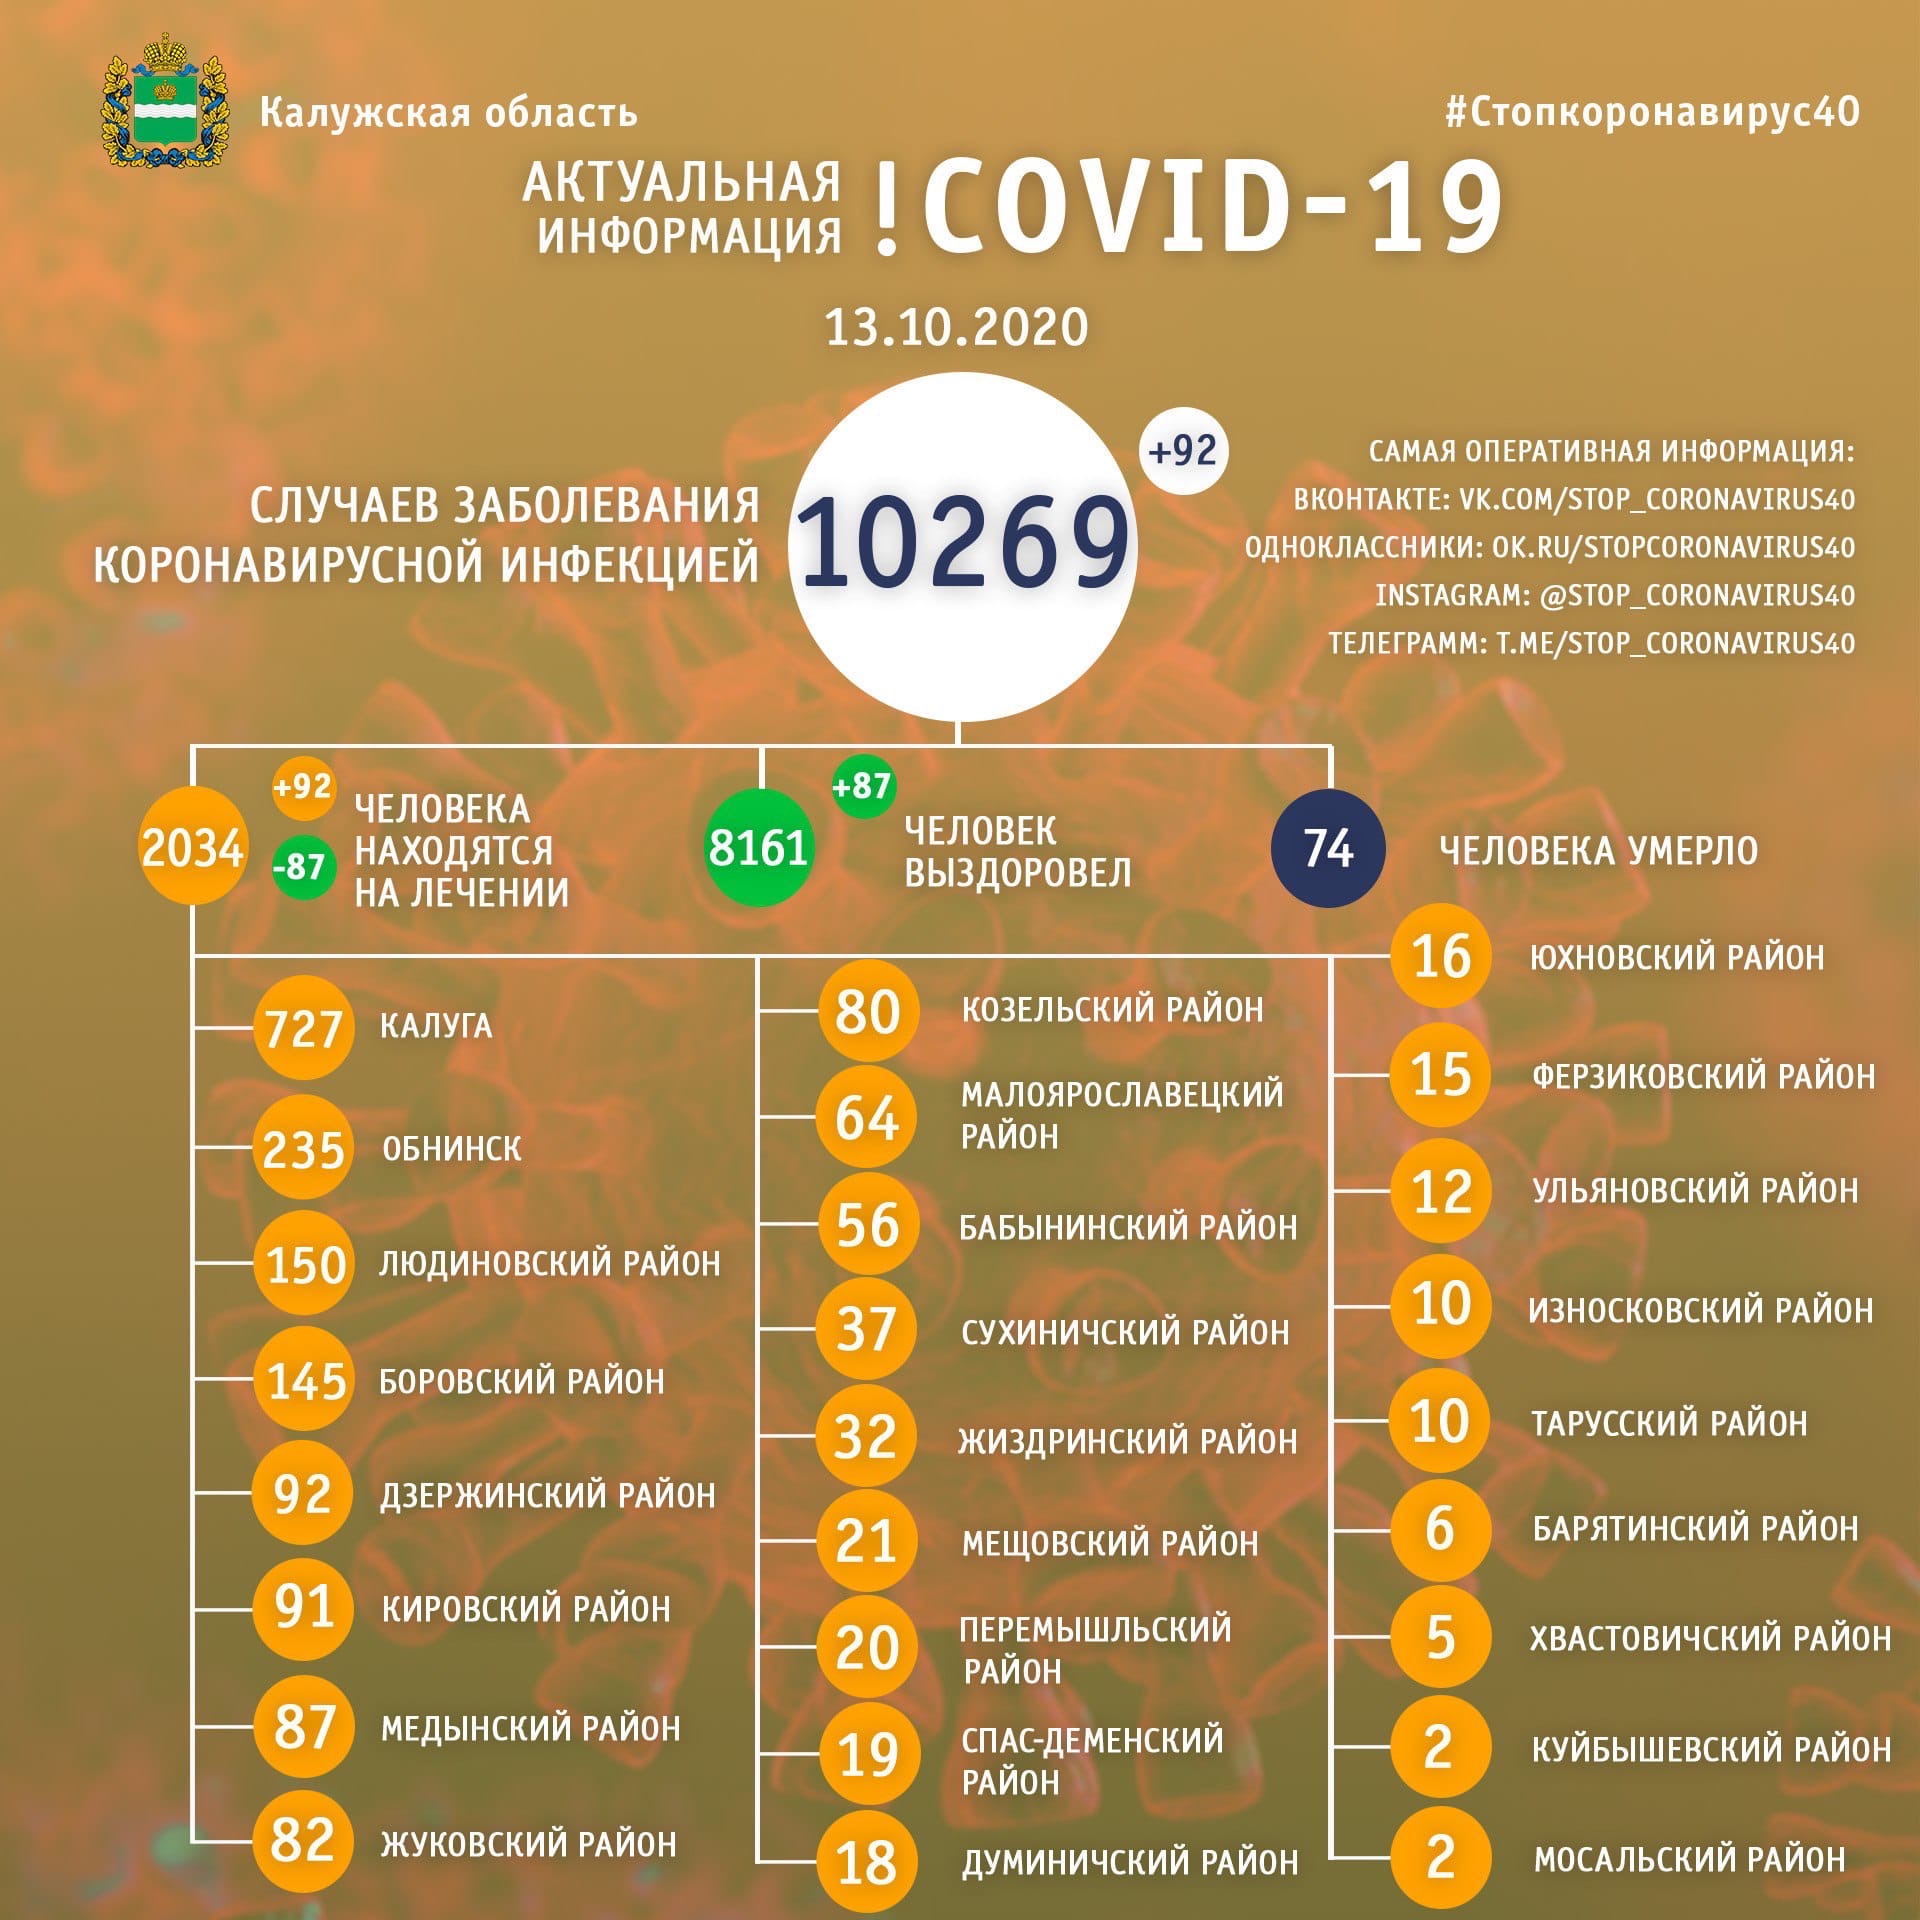 Официальная статистика по коронавирусу в Калужской области на 13 октября 2020 года.